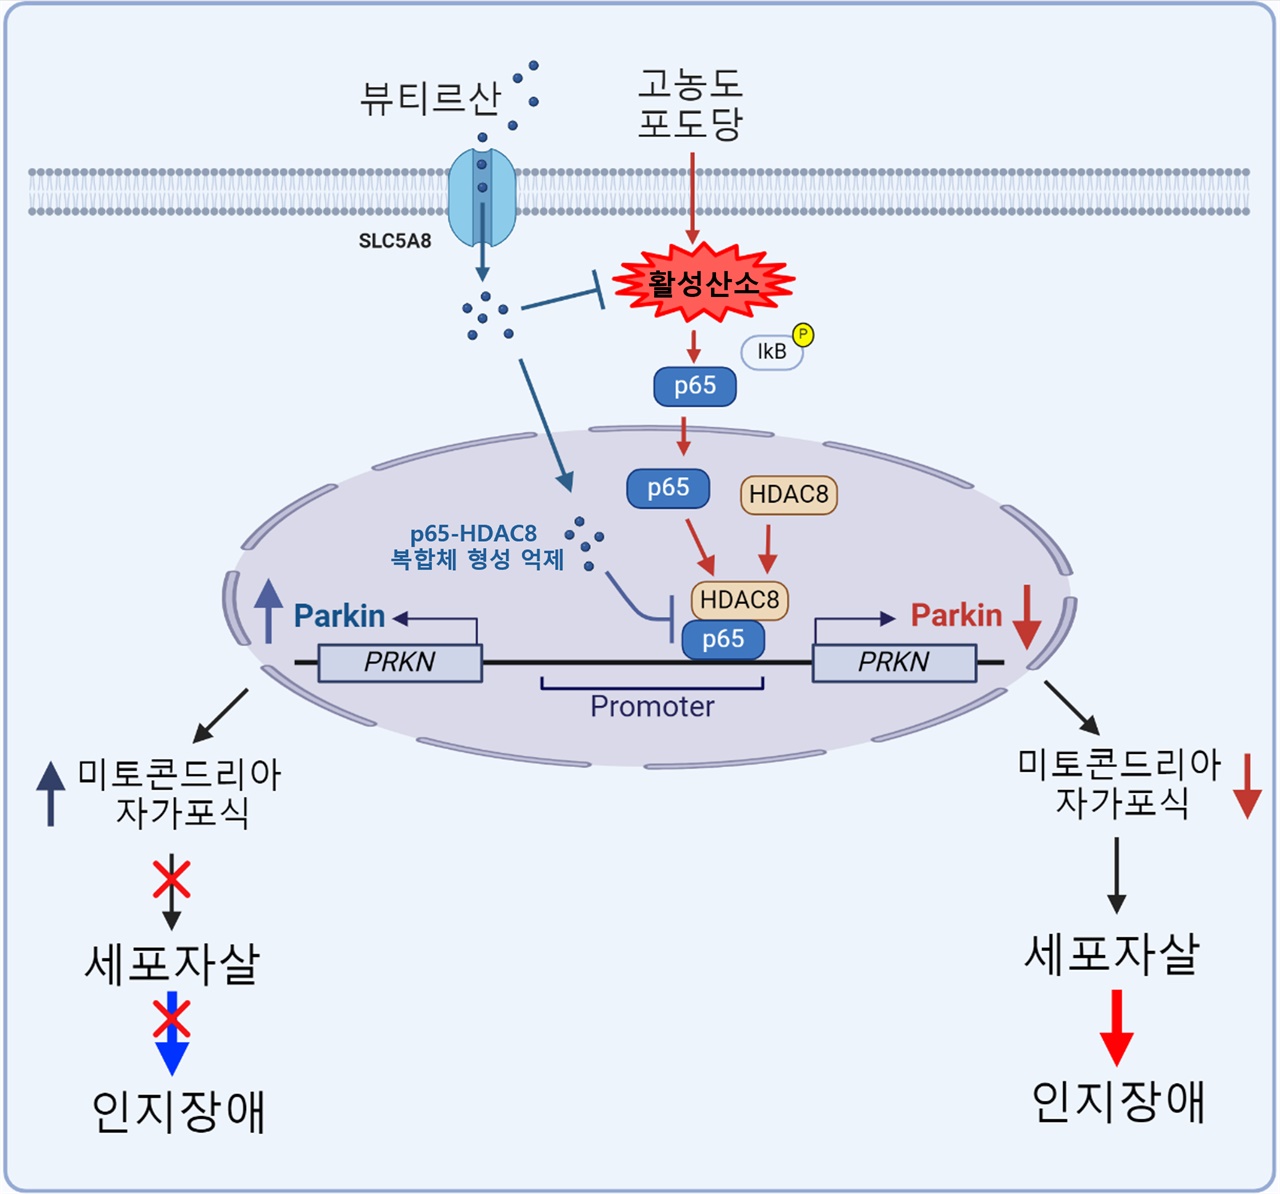 고농도 포도당에 의한 활성산소는 신경세포에서 p65 핵 내 이동을 통한 p65-HDAC8 복합체 형성을 유도하여 Parkin 발현을 감소시켰다. Parkin의 발현 감소는 미토콘드리아 자가포식을 억제하여 신경세포 사멸(세포자살) 및 인지 장애를 유발하였다. 뷰티르산은 p65-HDAC8 복합체 형성을 억제함으로써 Parkin 발현을 회복시켰다. 그 결과 뷰티르산은 고농도 포도당으로 인한 신경세포 사멸(세포자살)을 억제하여 인지 장애를 완화하였다.